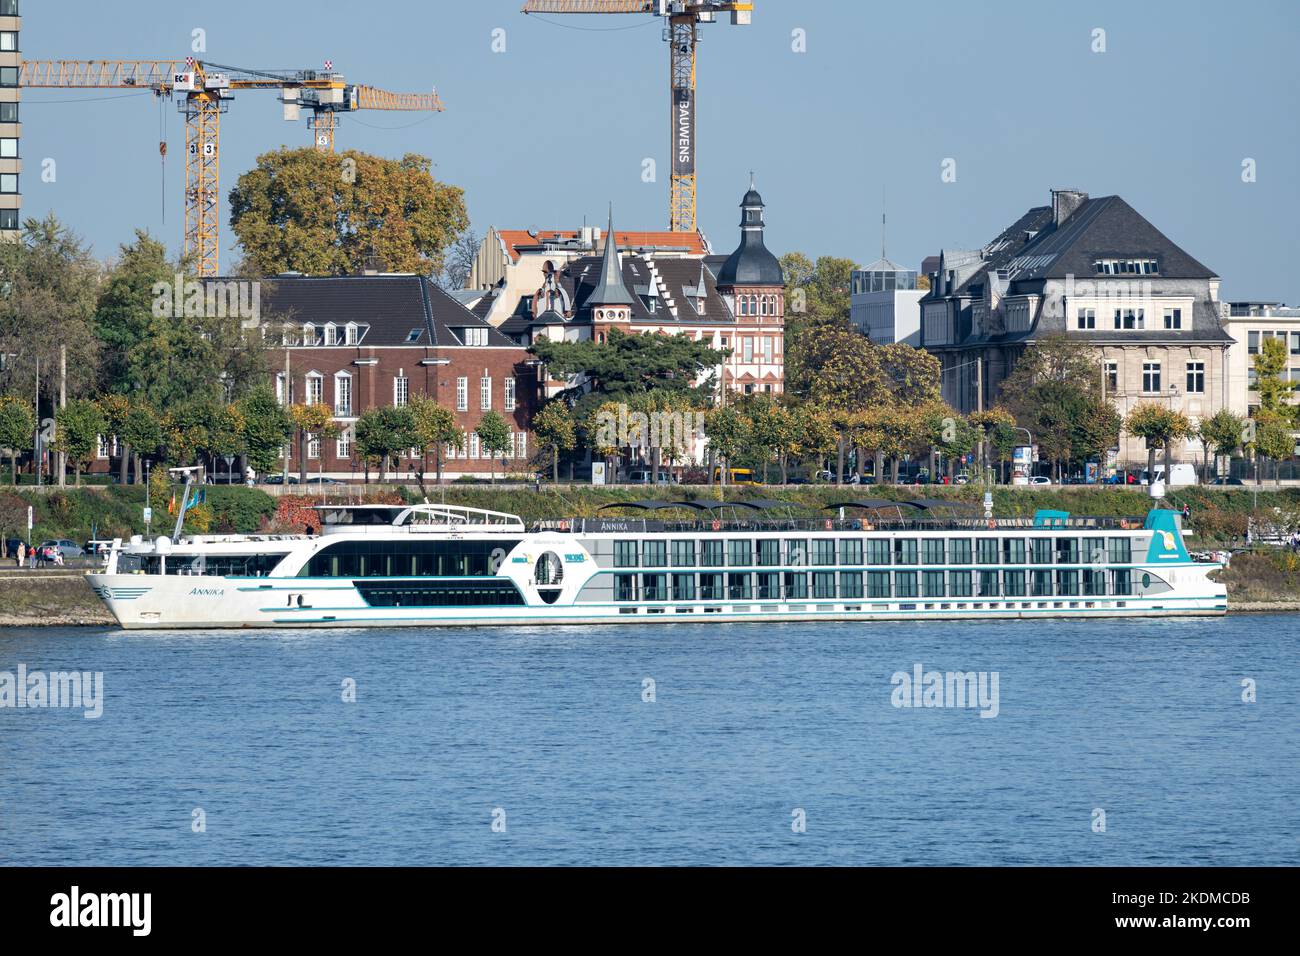 Nave da crociera sul fiume ANNIKA a Colonia, Germania Foto Stock